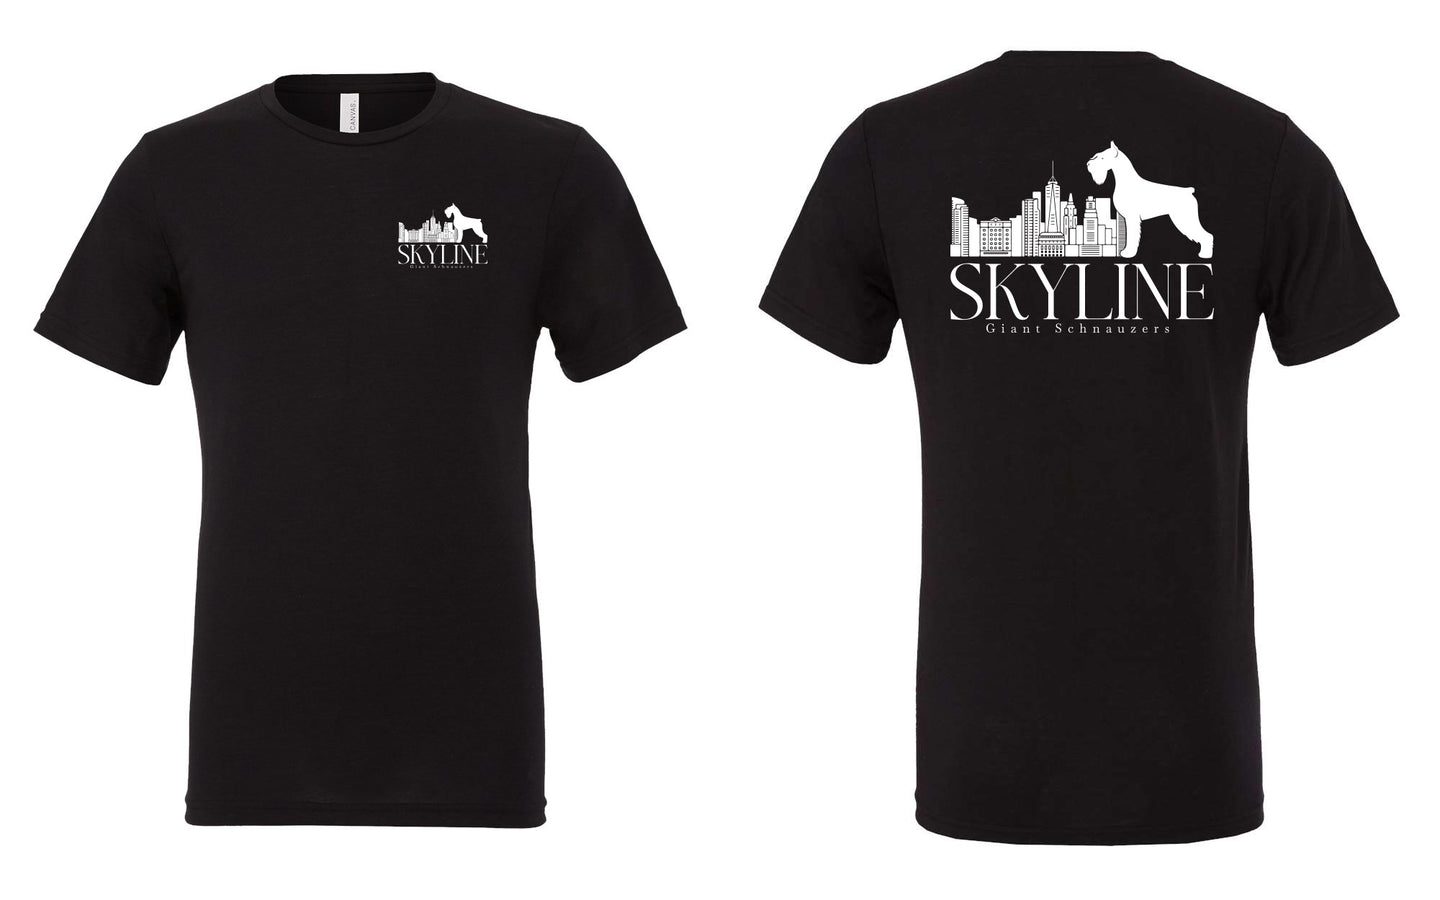 Skyline Giant Schnauzers Black Triblend Tee - 3413